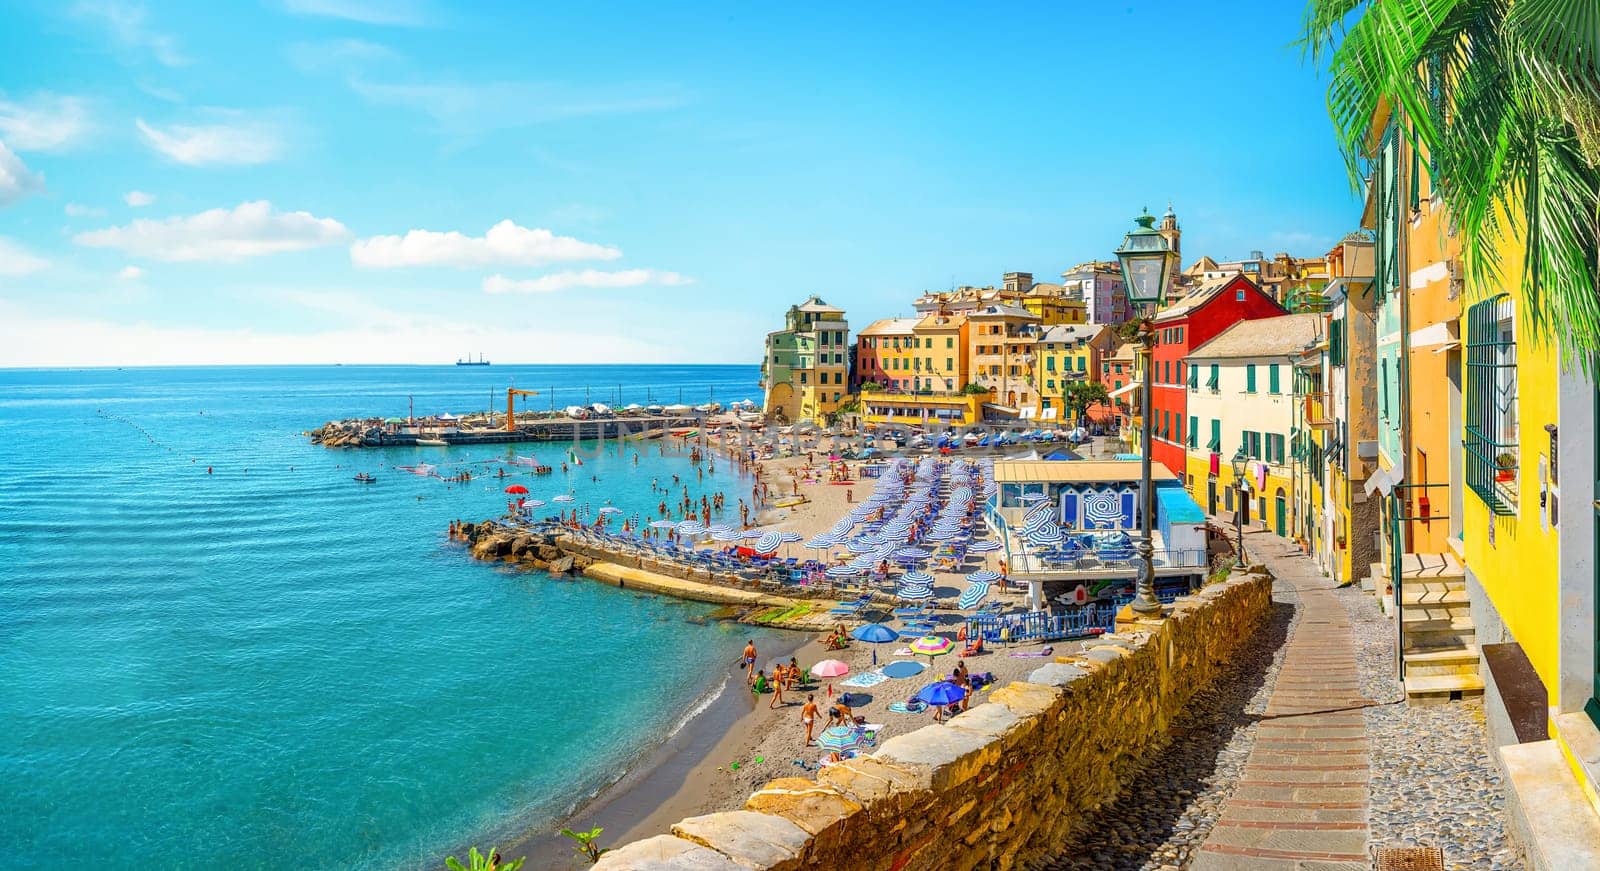 View of Bogliasco. Bogliasco is a ancient fishing village in Italy, Genoa, Liguria. Mediterranean Sea, sandy beach and architecture of Bogliasco town